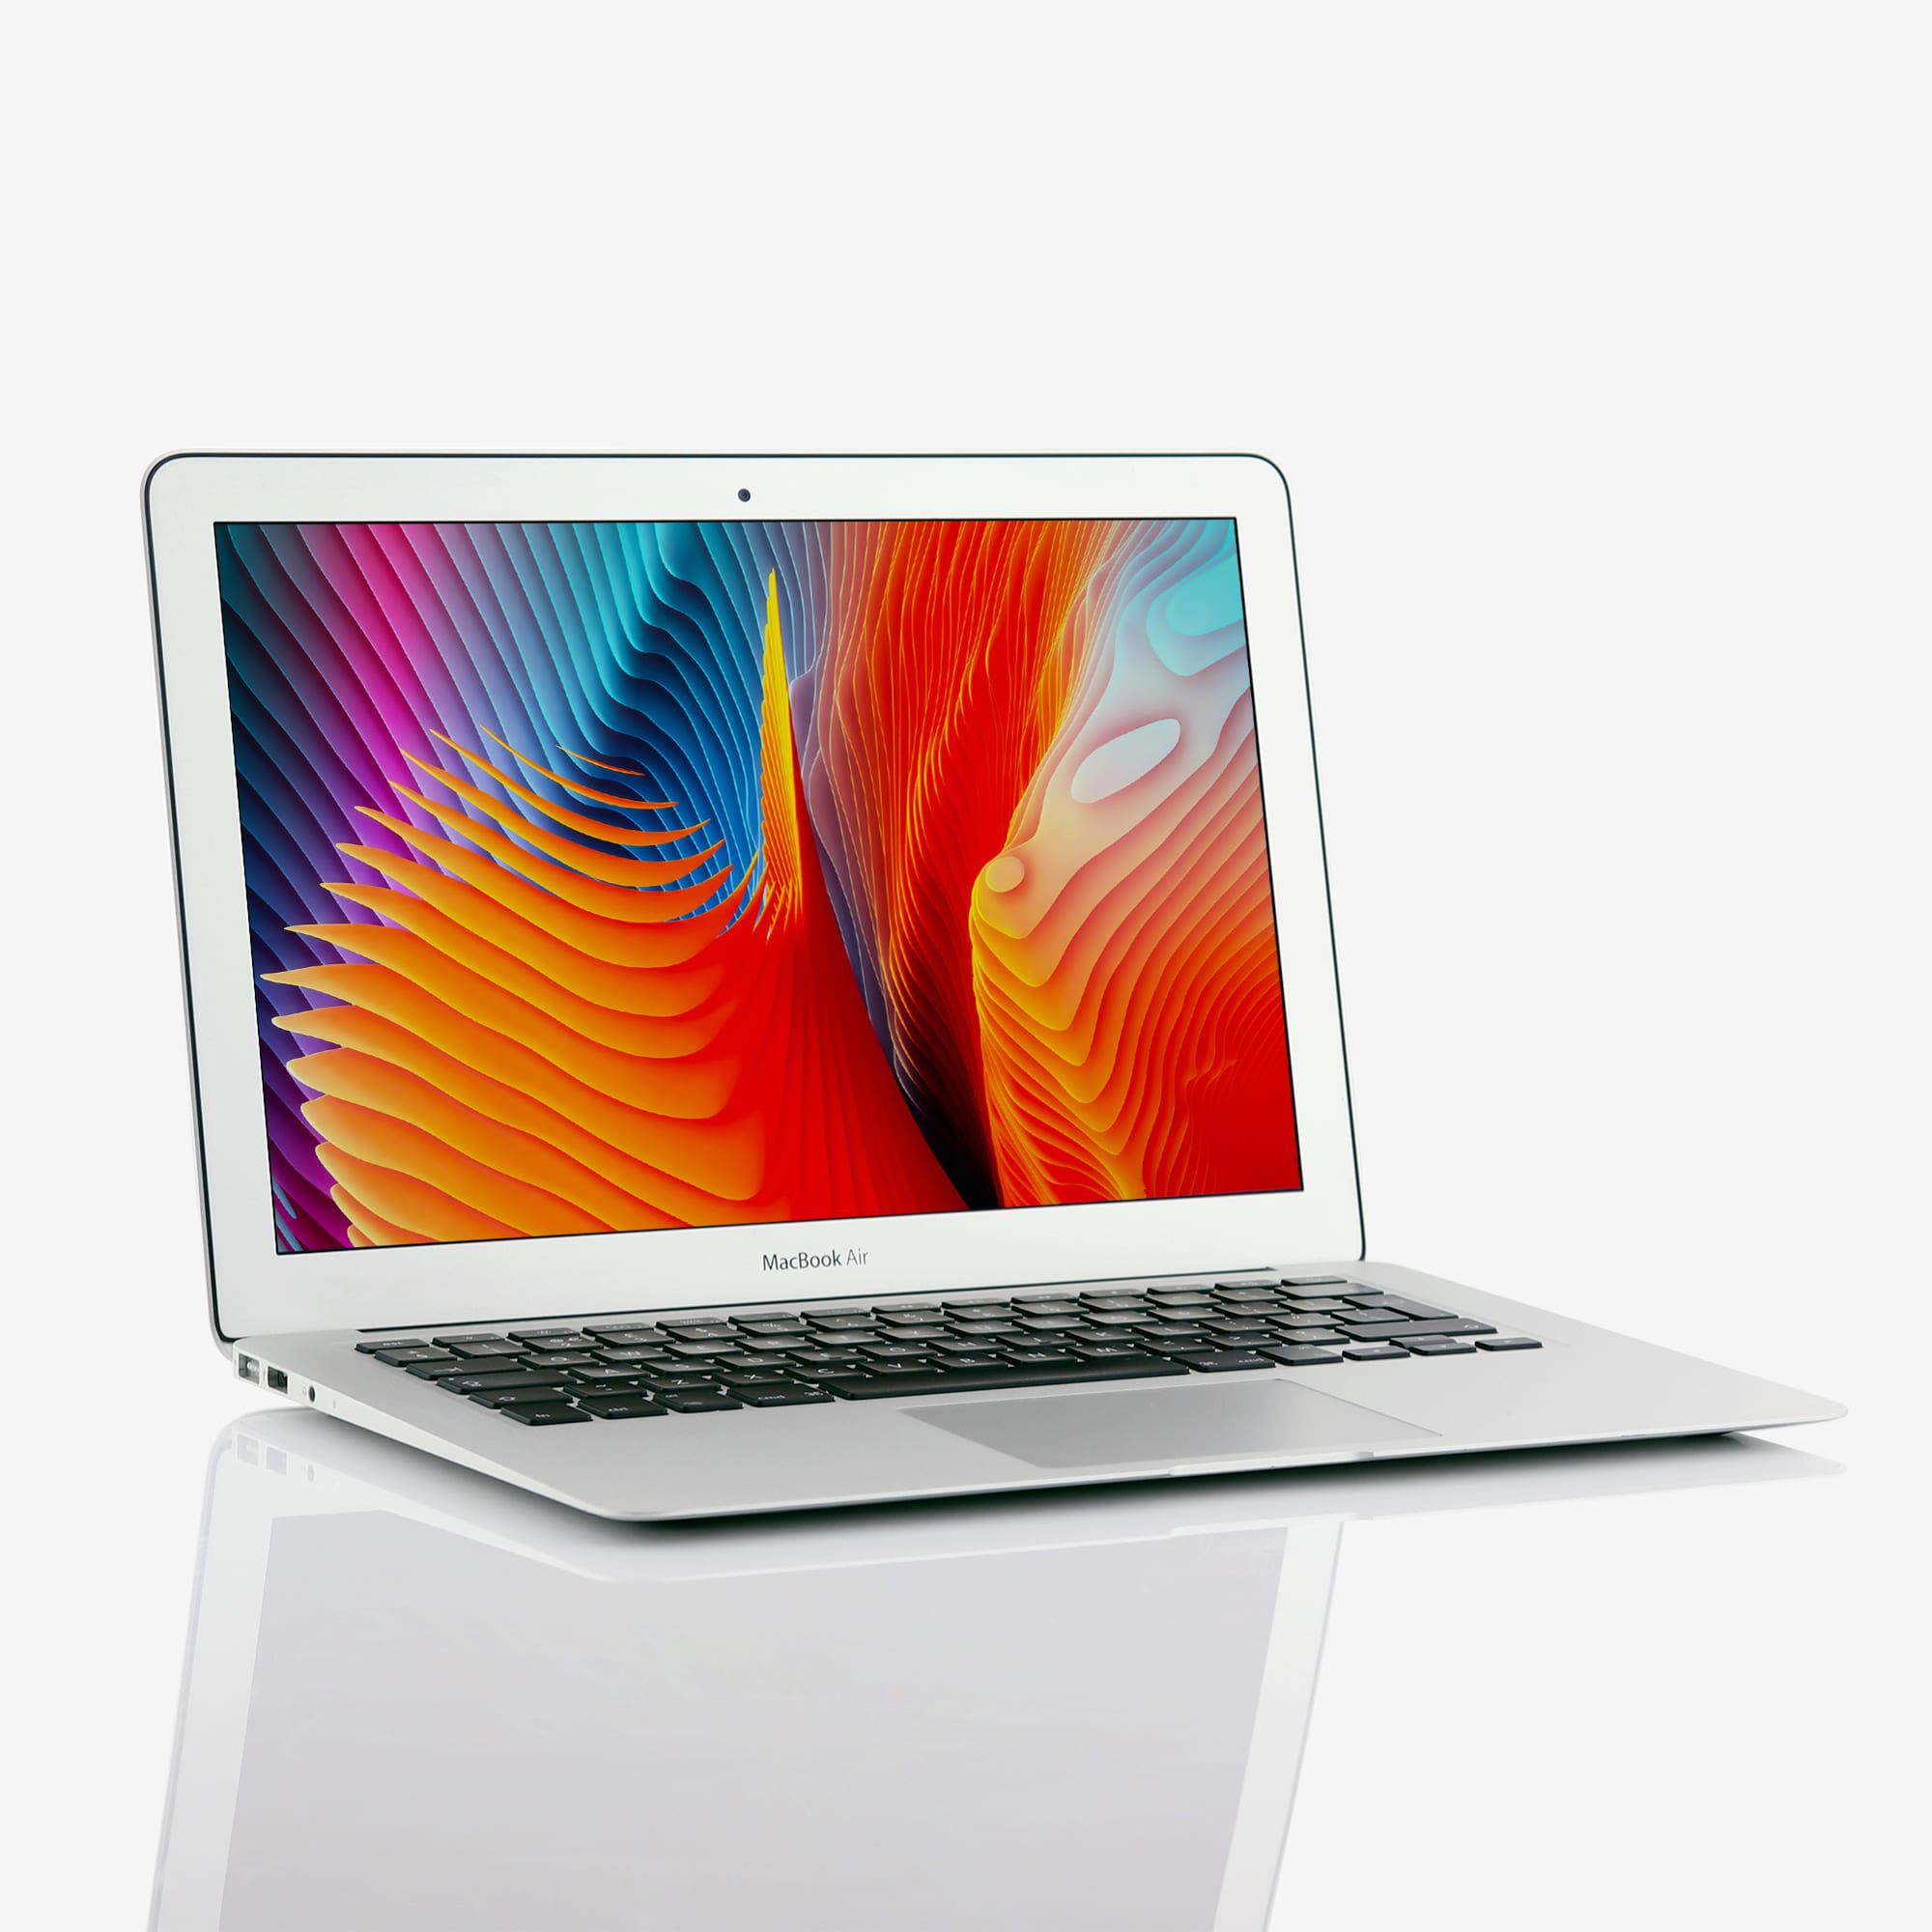 Apple MacBook Air 13 Inch Intel Core i5 1.60 GHz (2015) - MacFinder